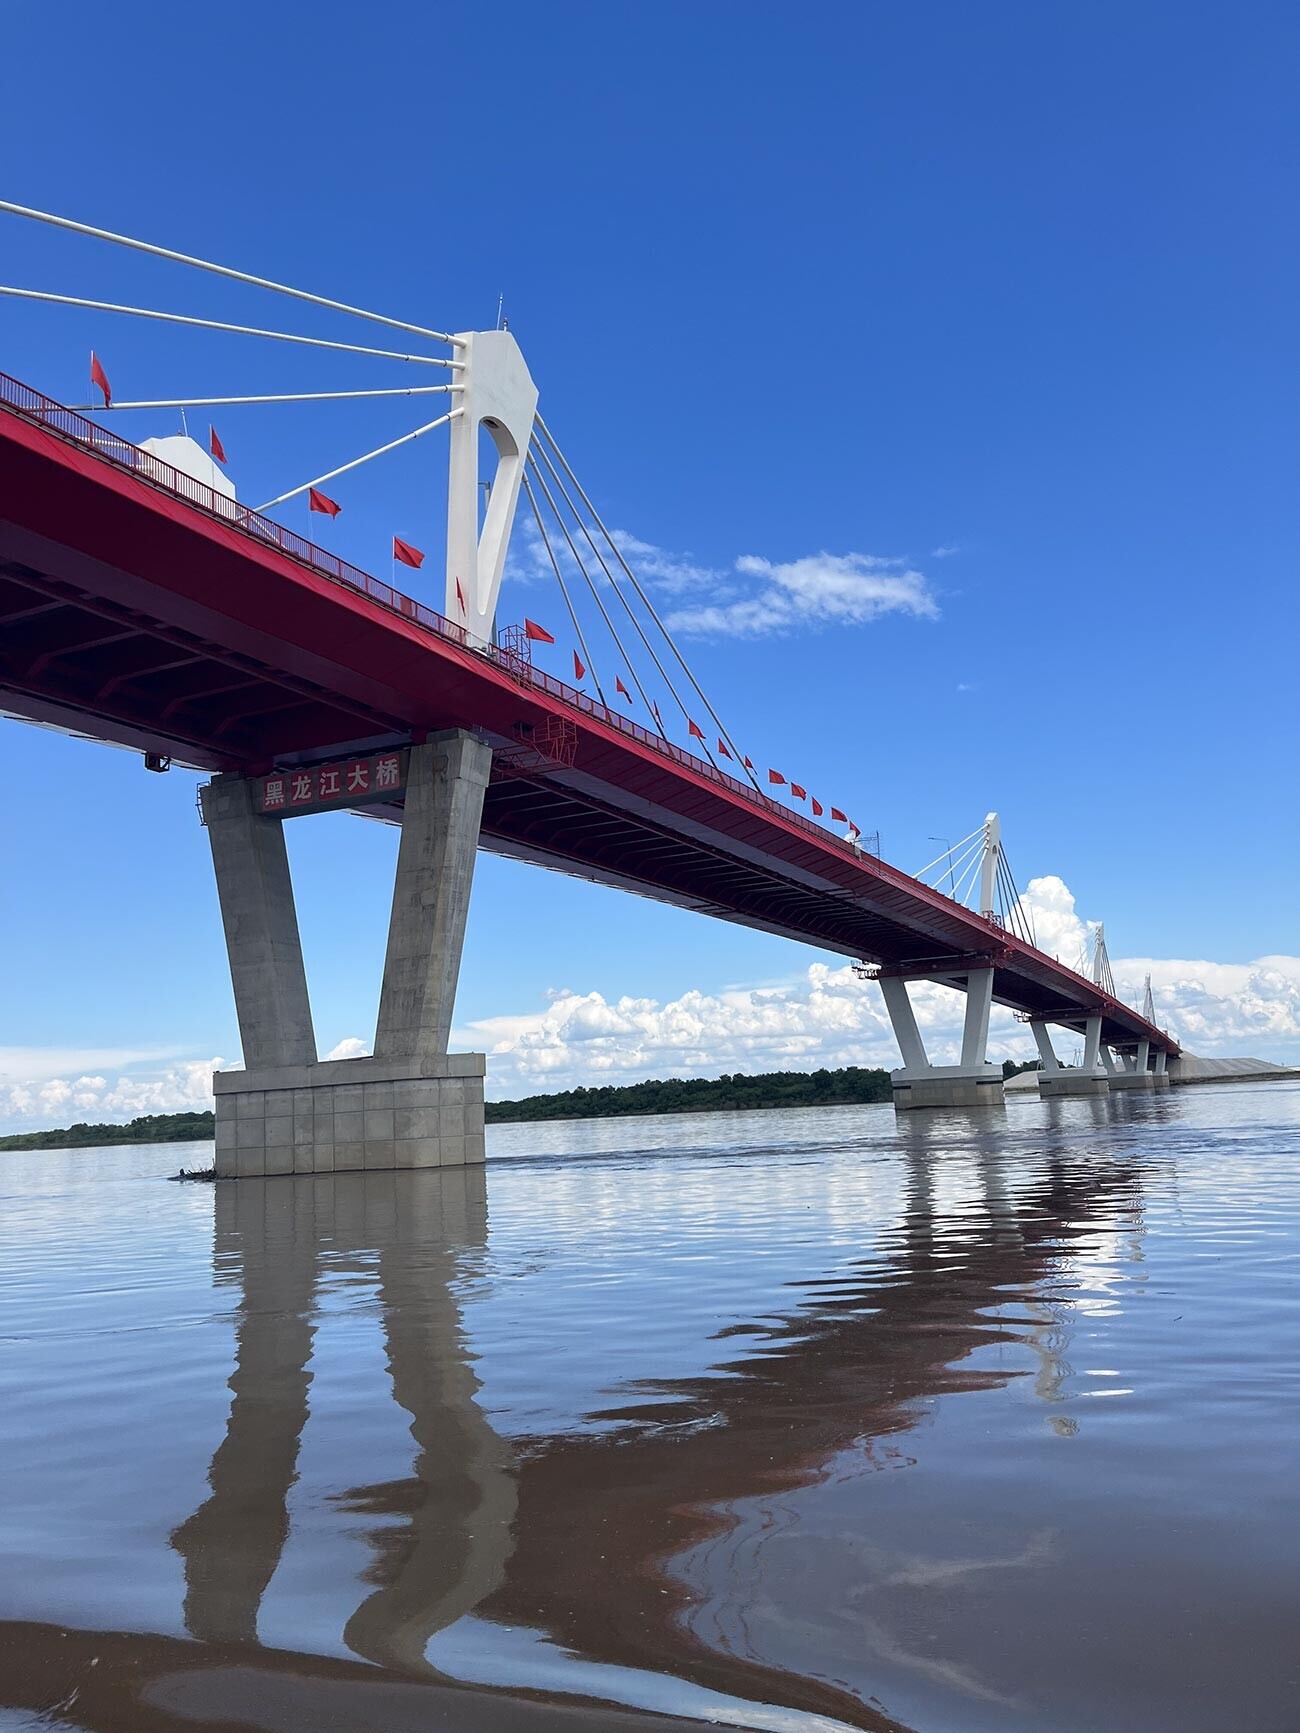 Nova ponte sobre o rio Amur

